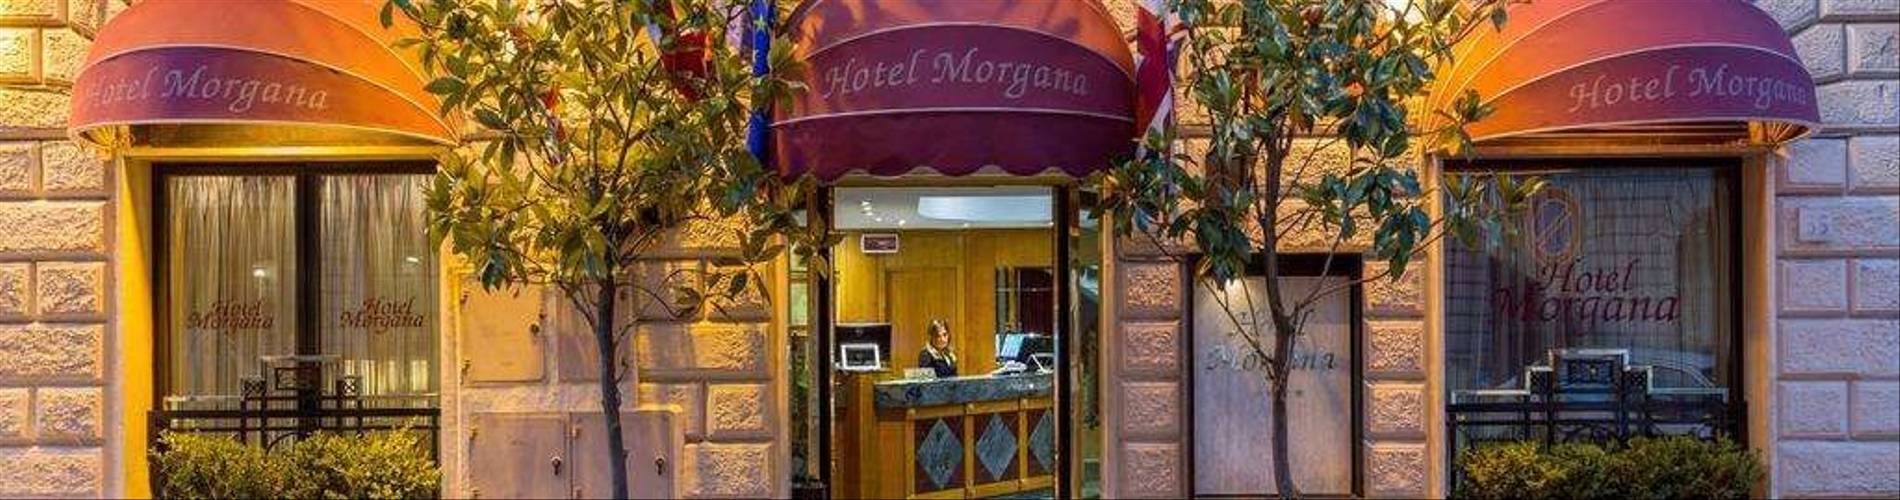 Hotel Morgana 2.jpg